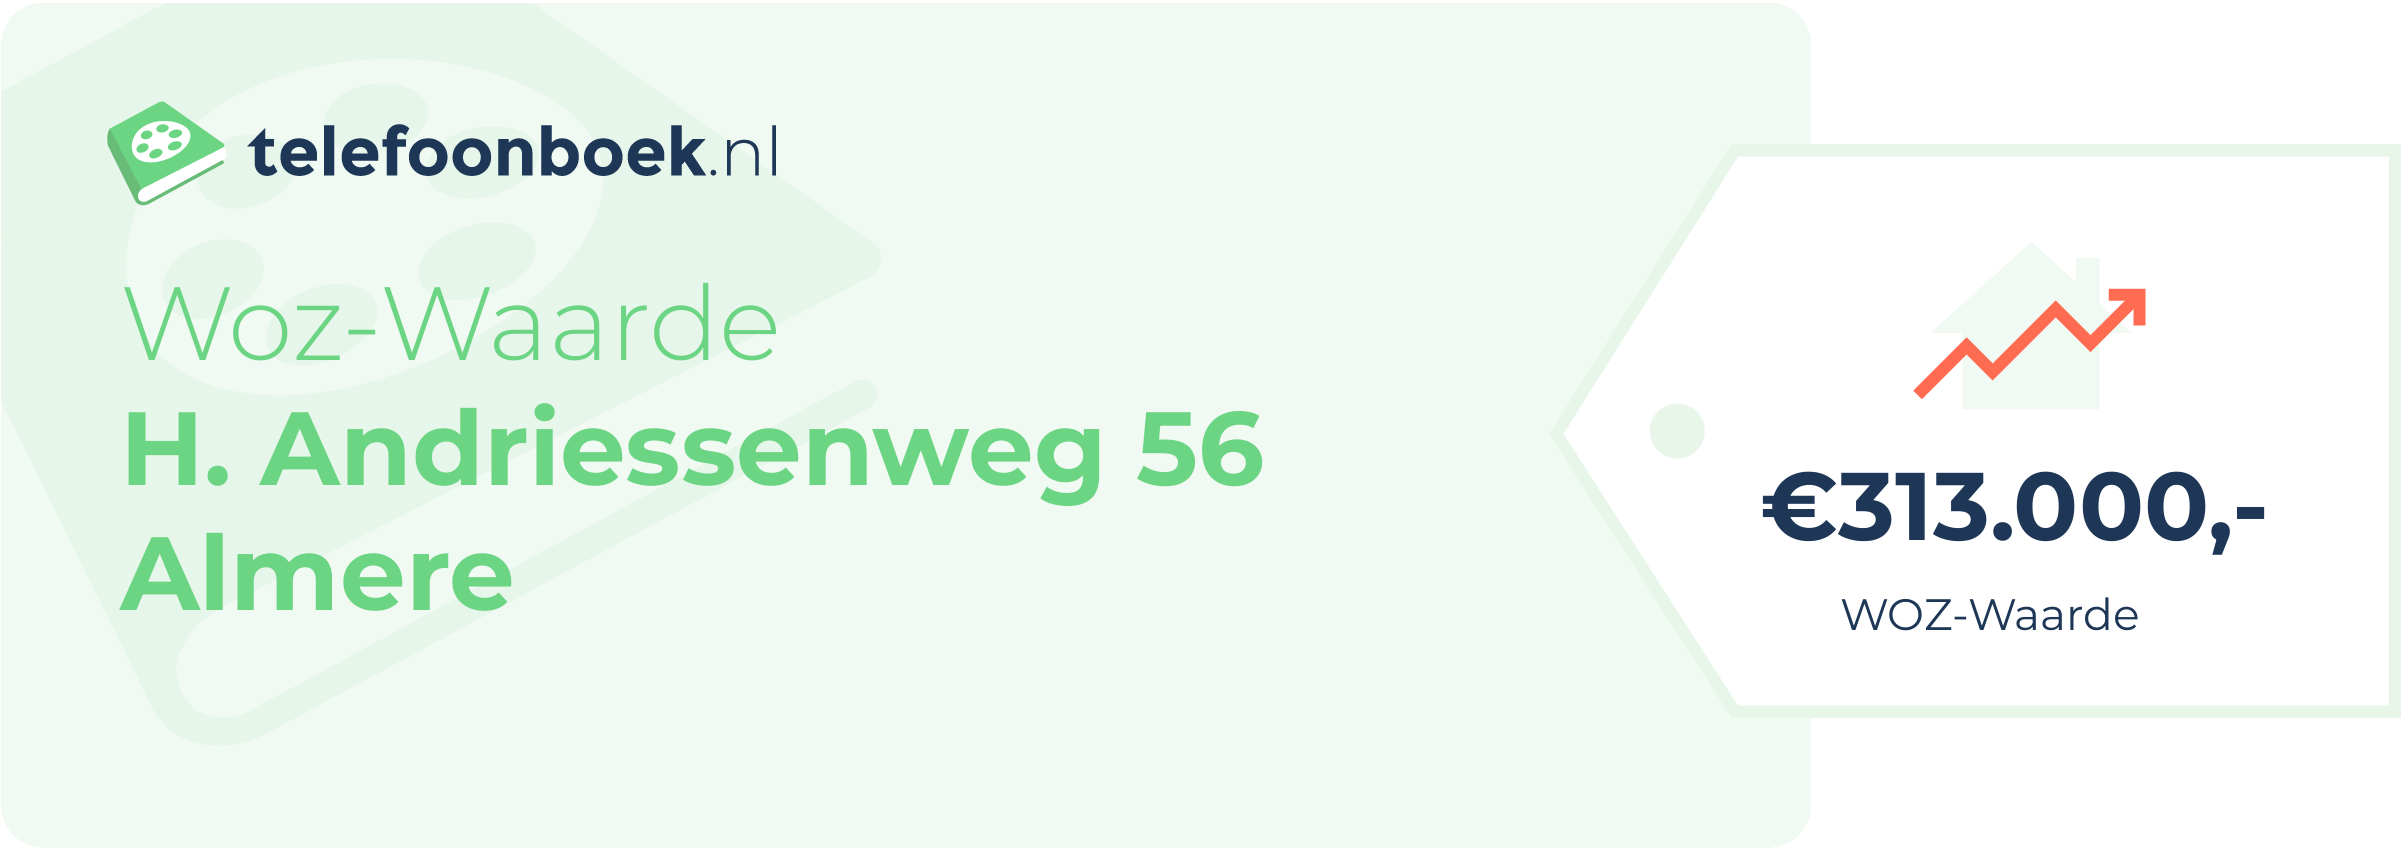 WOZ-waarde H. Andriessenweg 56 Almere